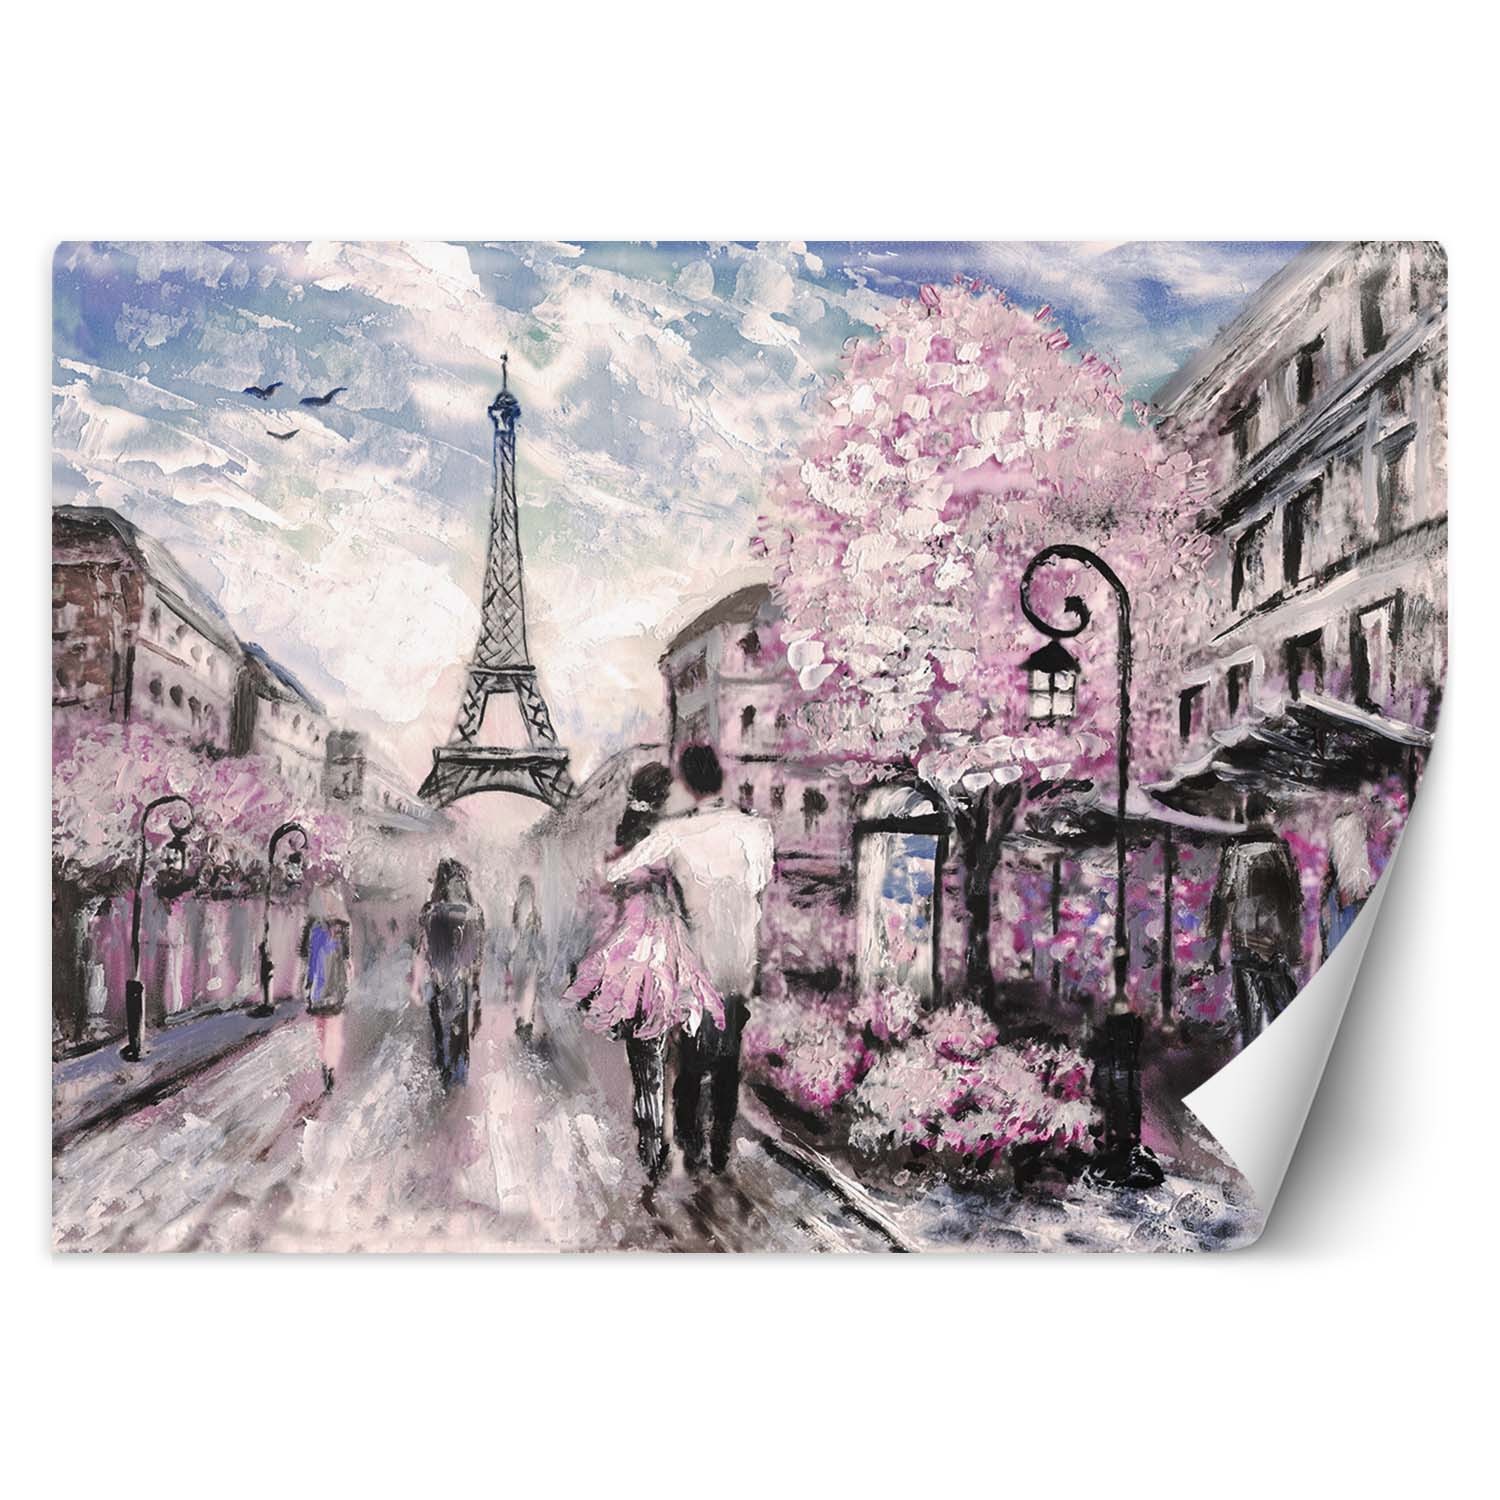 Trend24 – Behang – Parijs In Het Voorjaar – Vliesbehang – Fotobehang – Behang Woonkamer – 450x315x2 cm – Incl. behanglijm